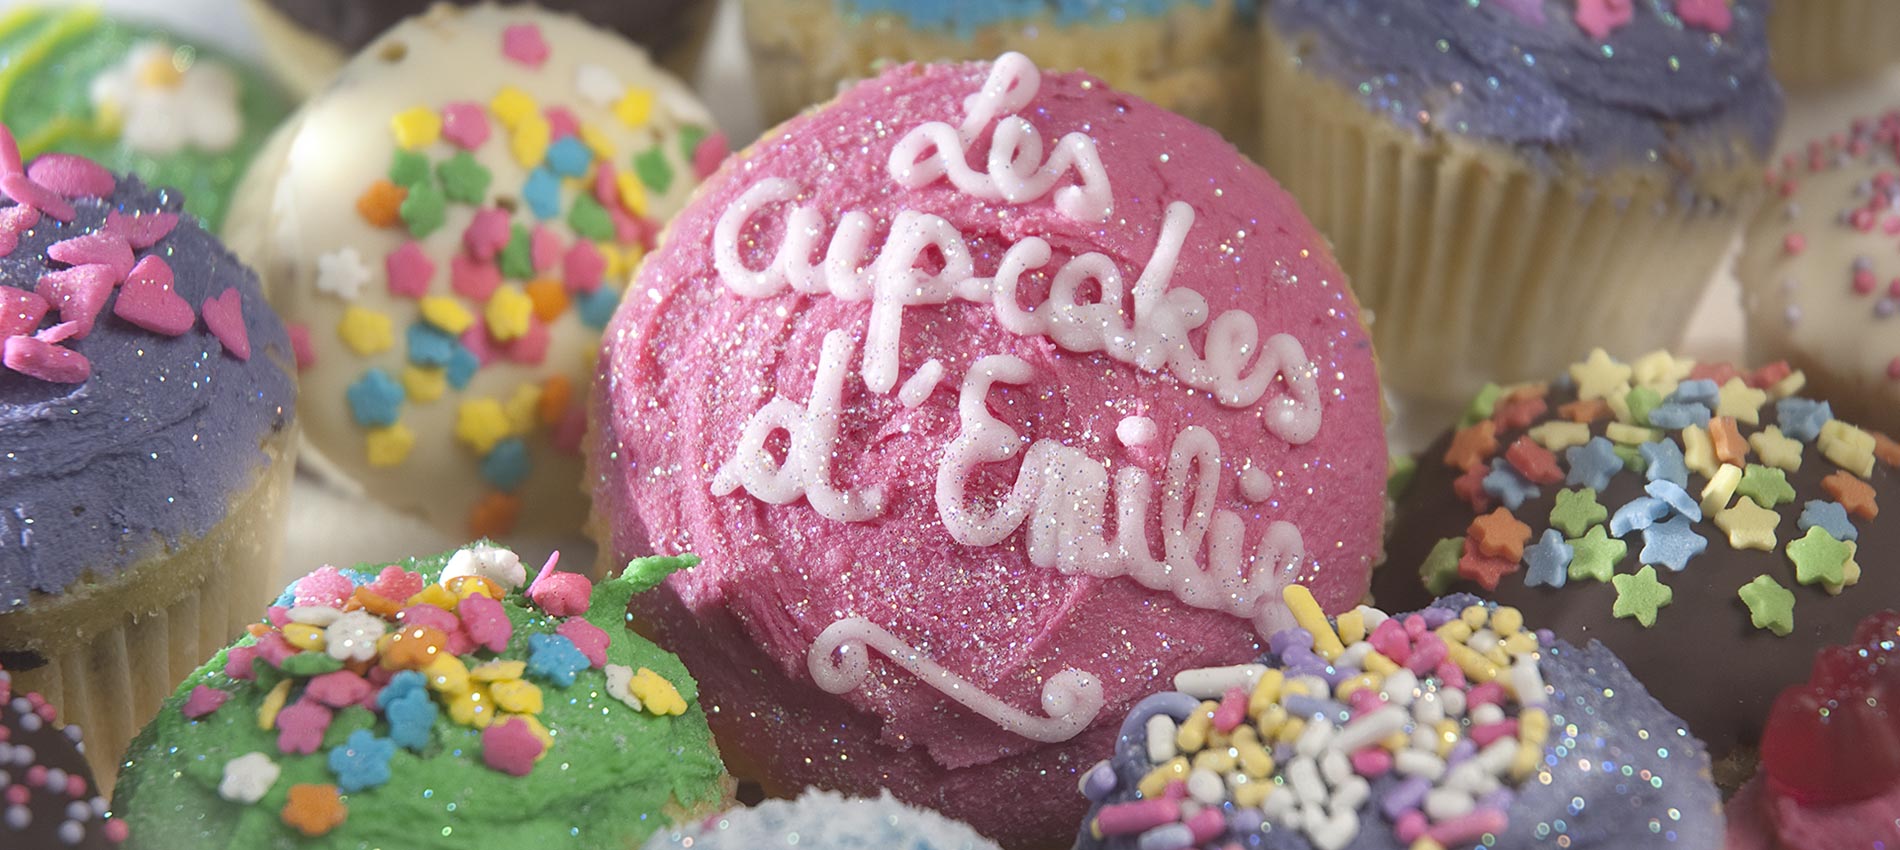 Dégustez nos cupcakes chez Les Cupcakes d'Emilie ! &mdash; Les Cupcakes d'Emilie